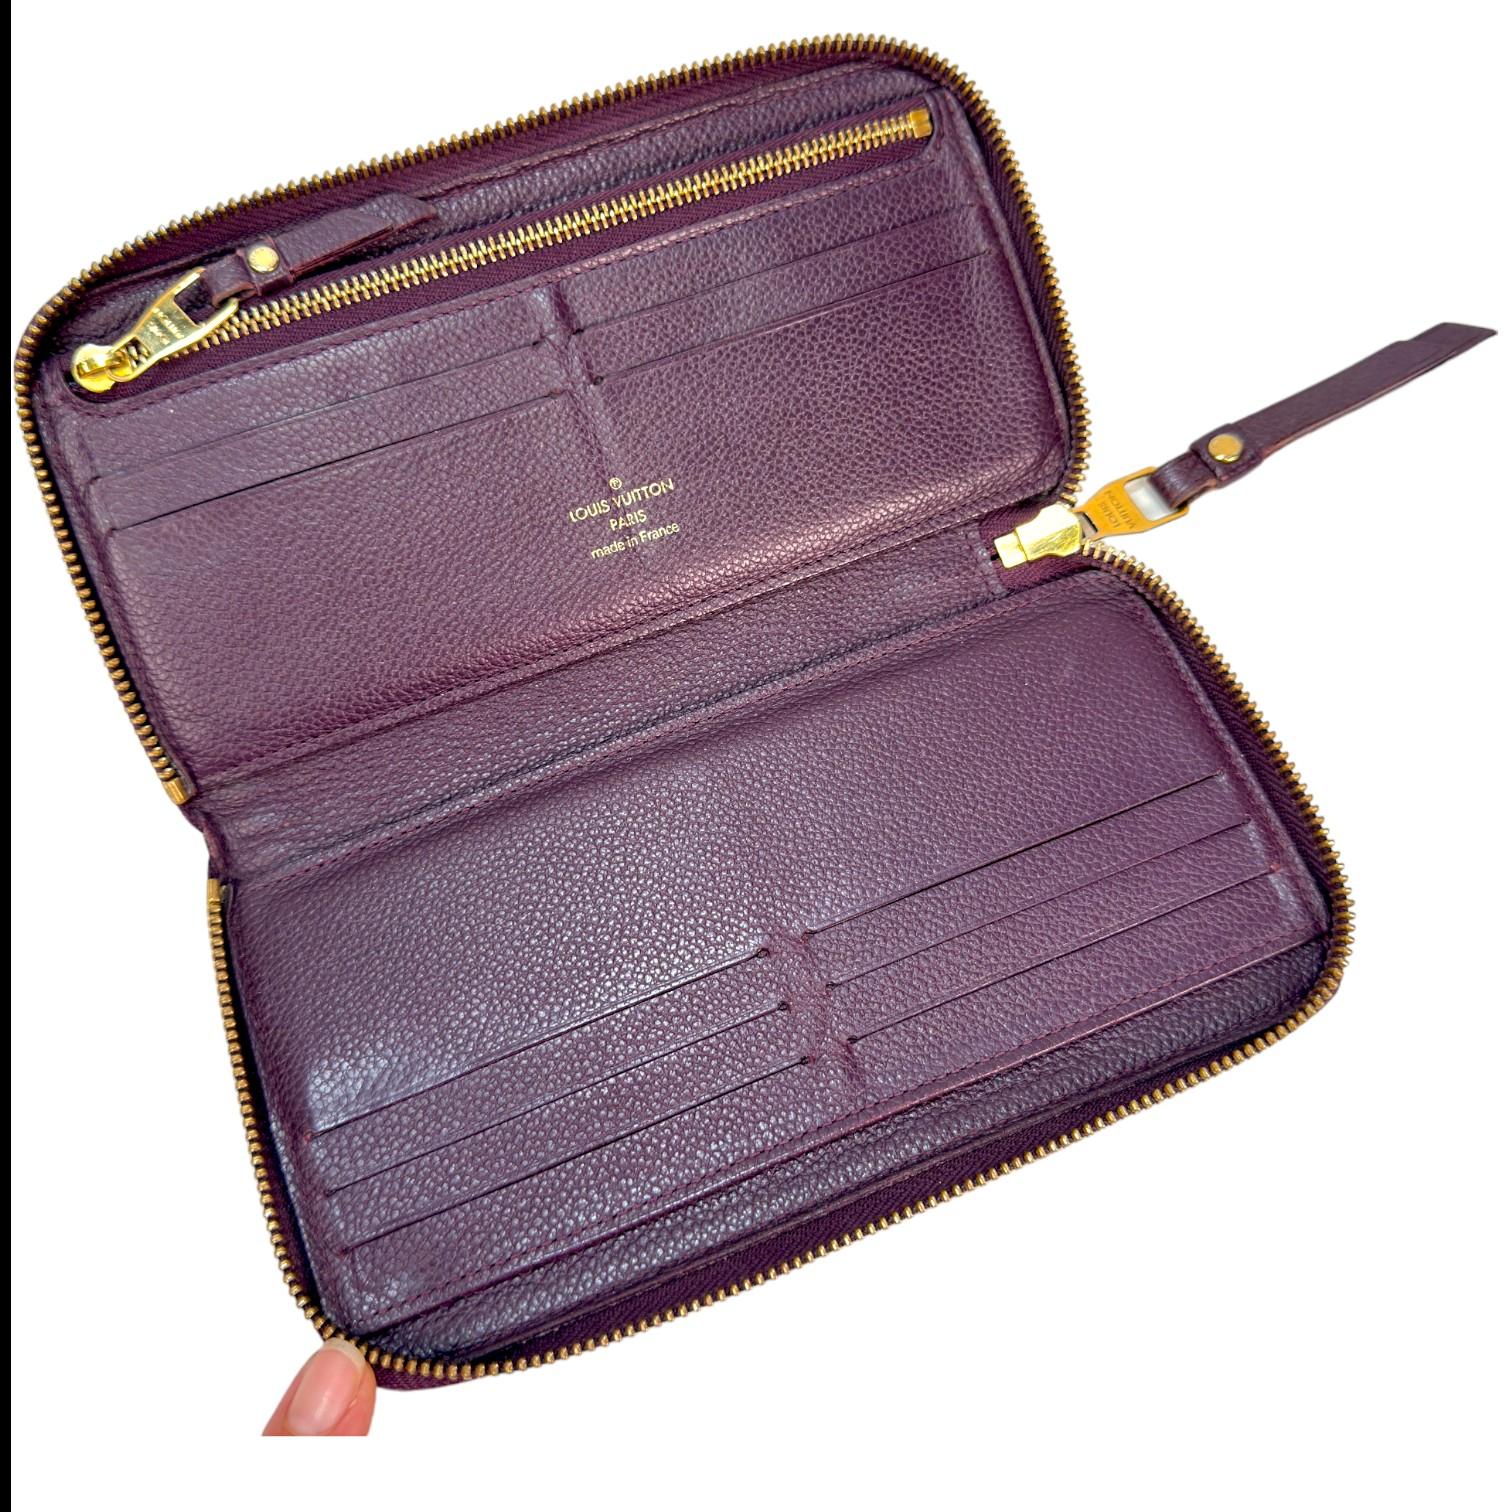 Authentic estate Louis Vuitton Empriente Zippy purple leather wallet